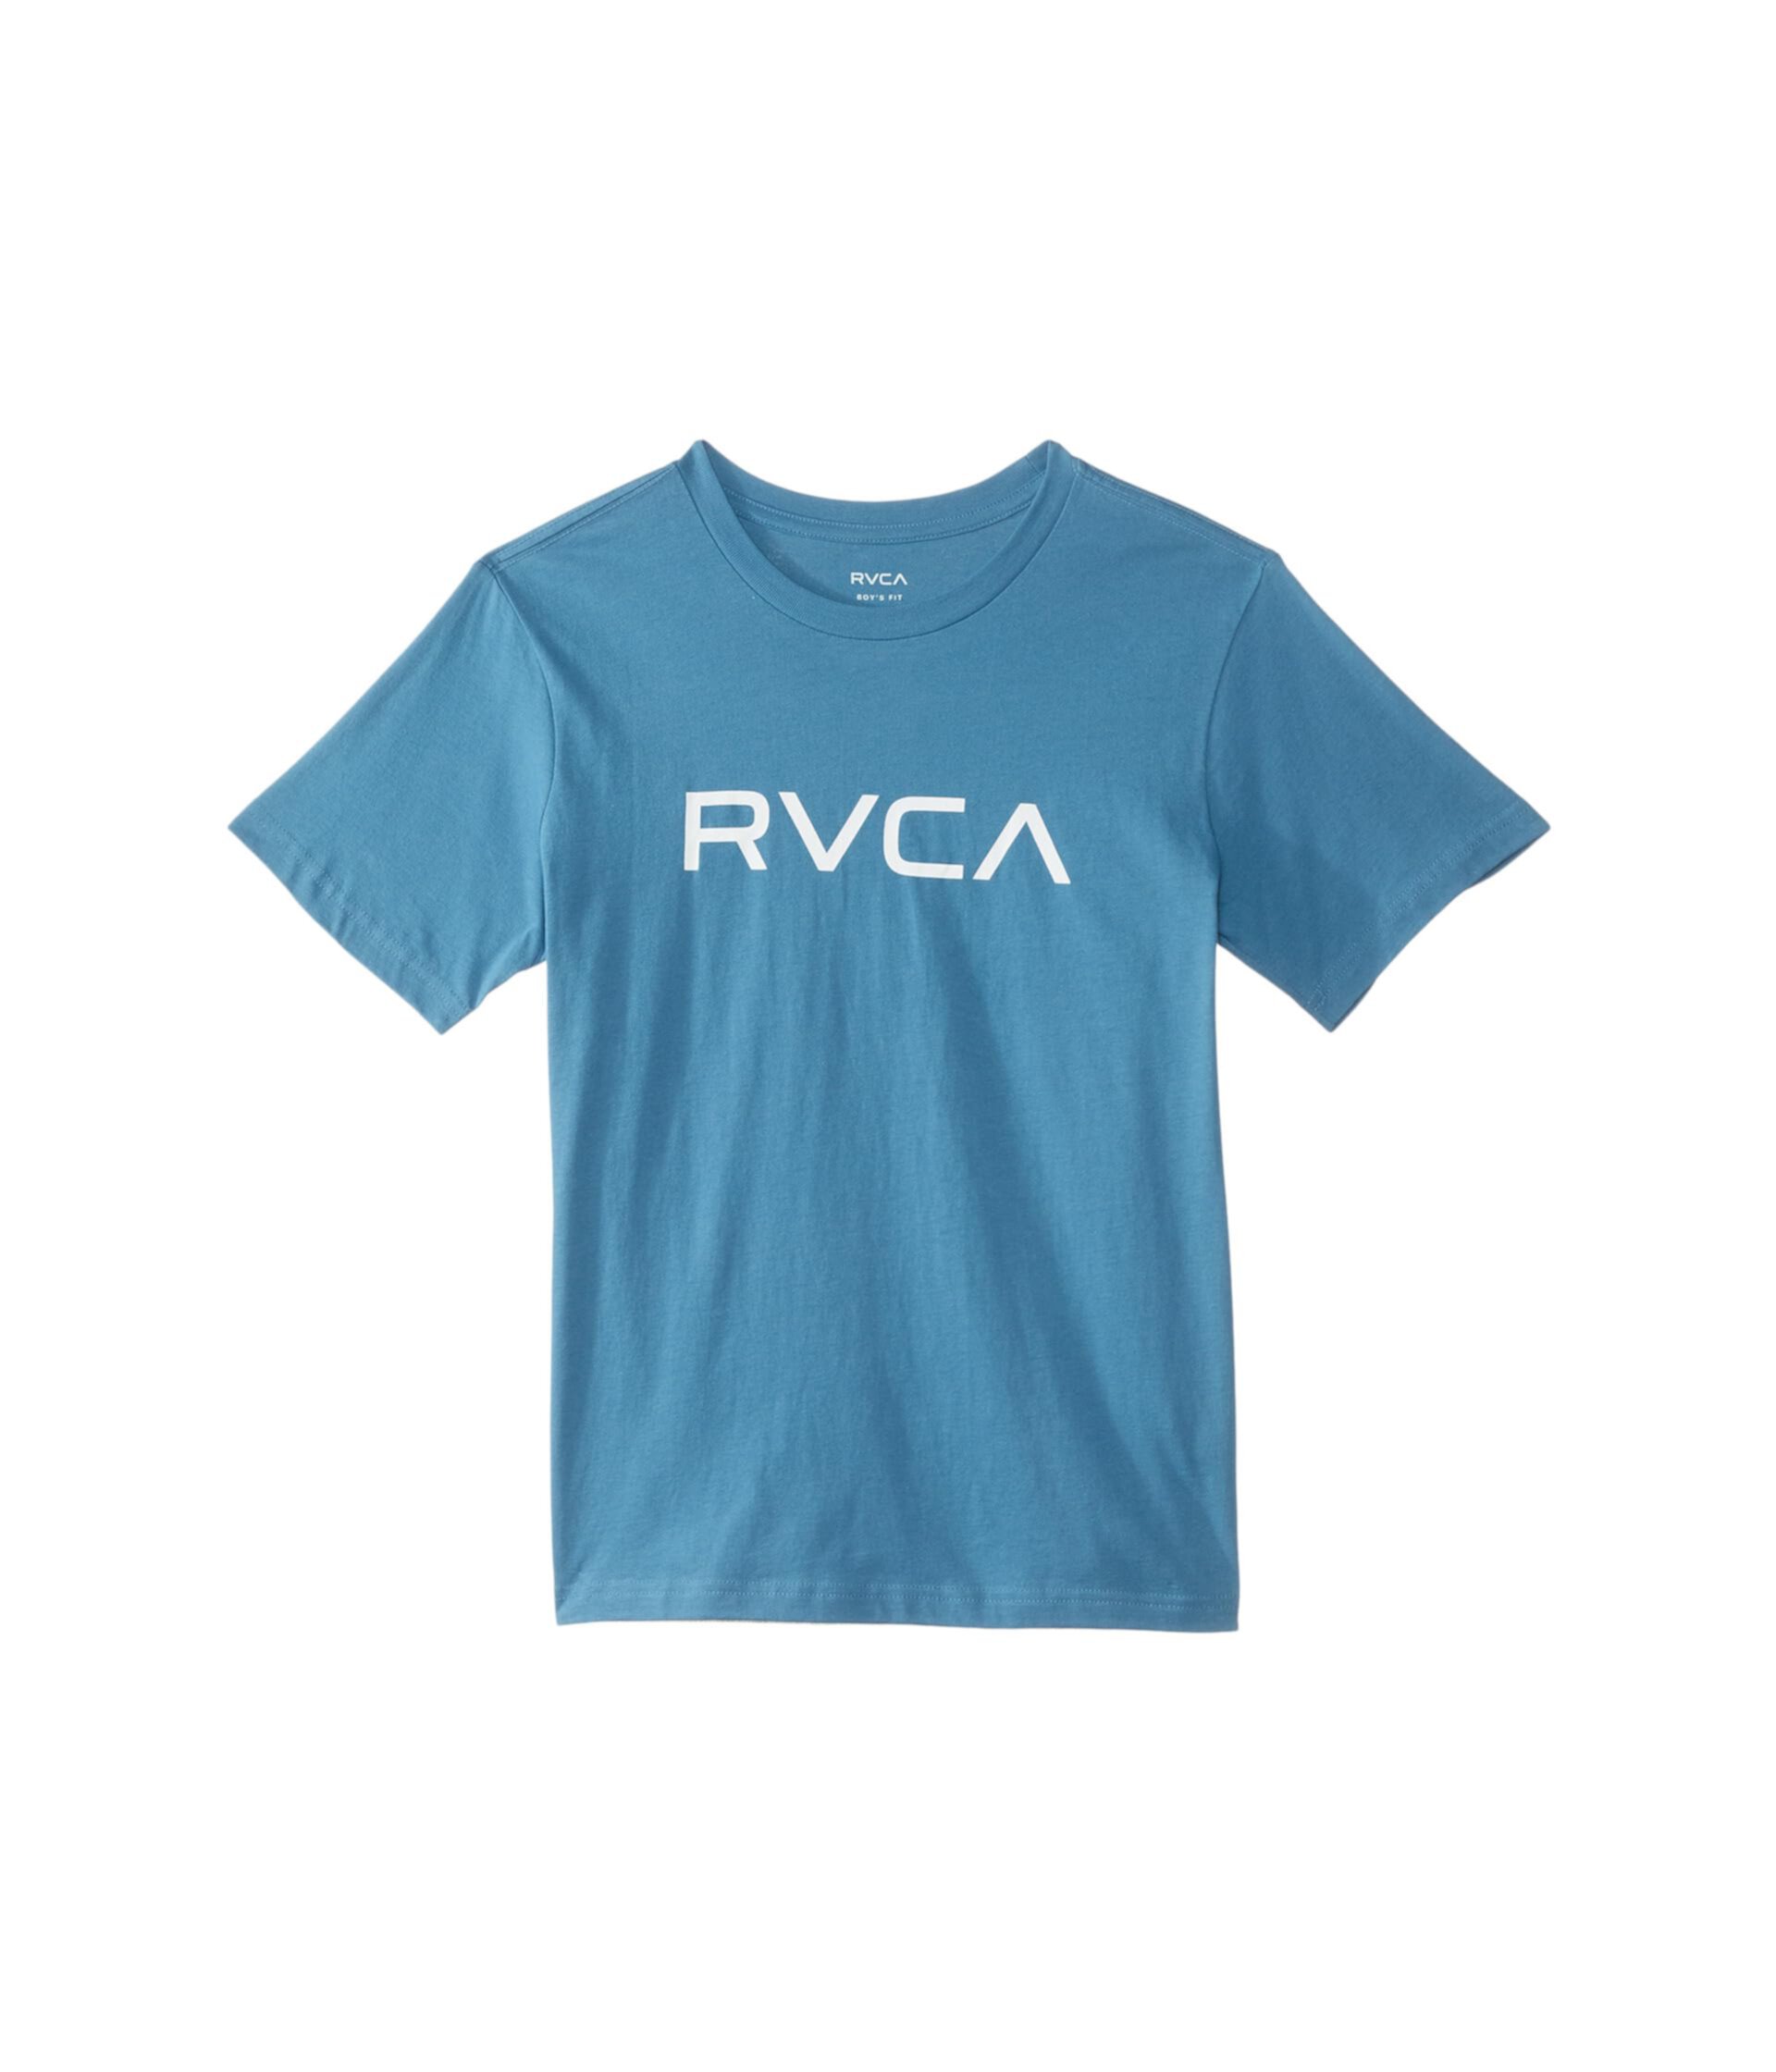 Big RVCA с короткими рукавами (для детей младшего и школьного возраста) RVCA Kids